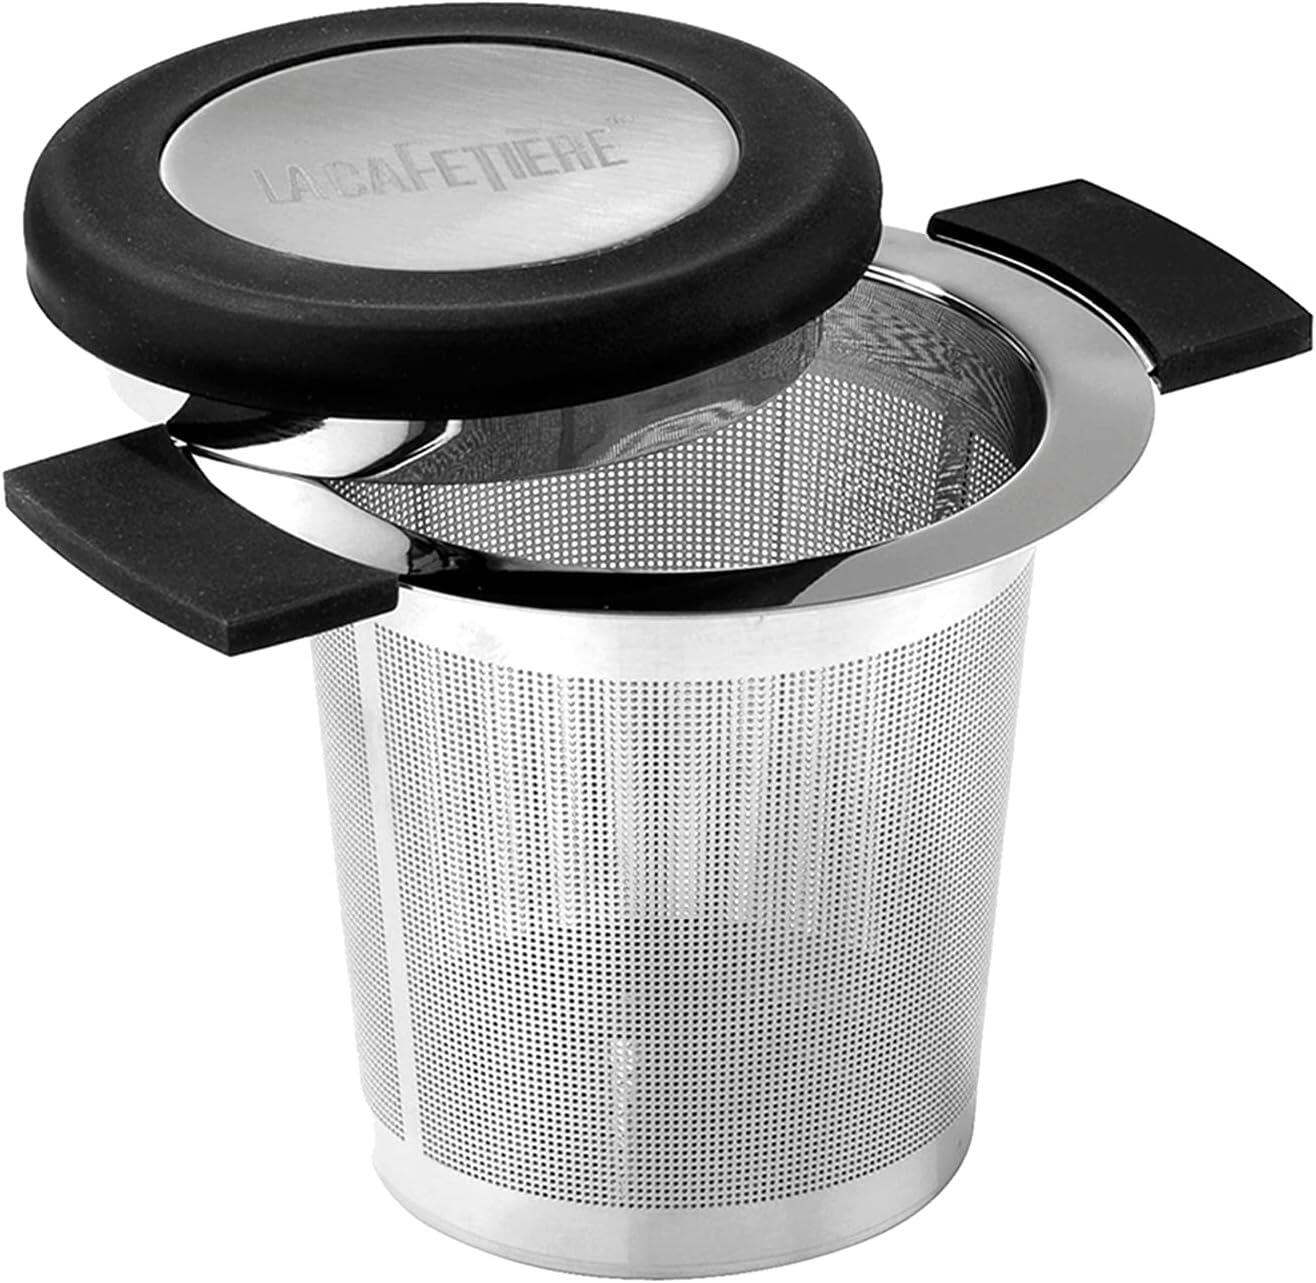 Tea Infuser Basket – Three Gems Tea